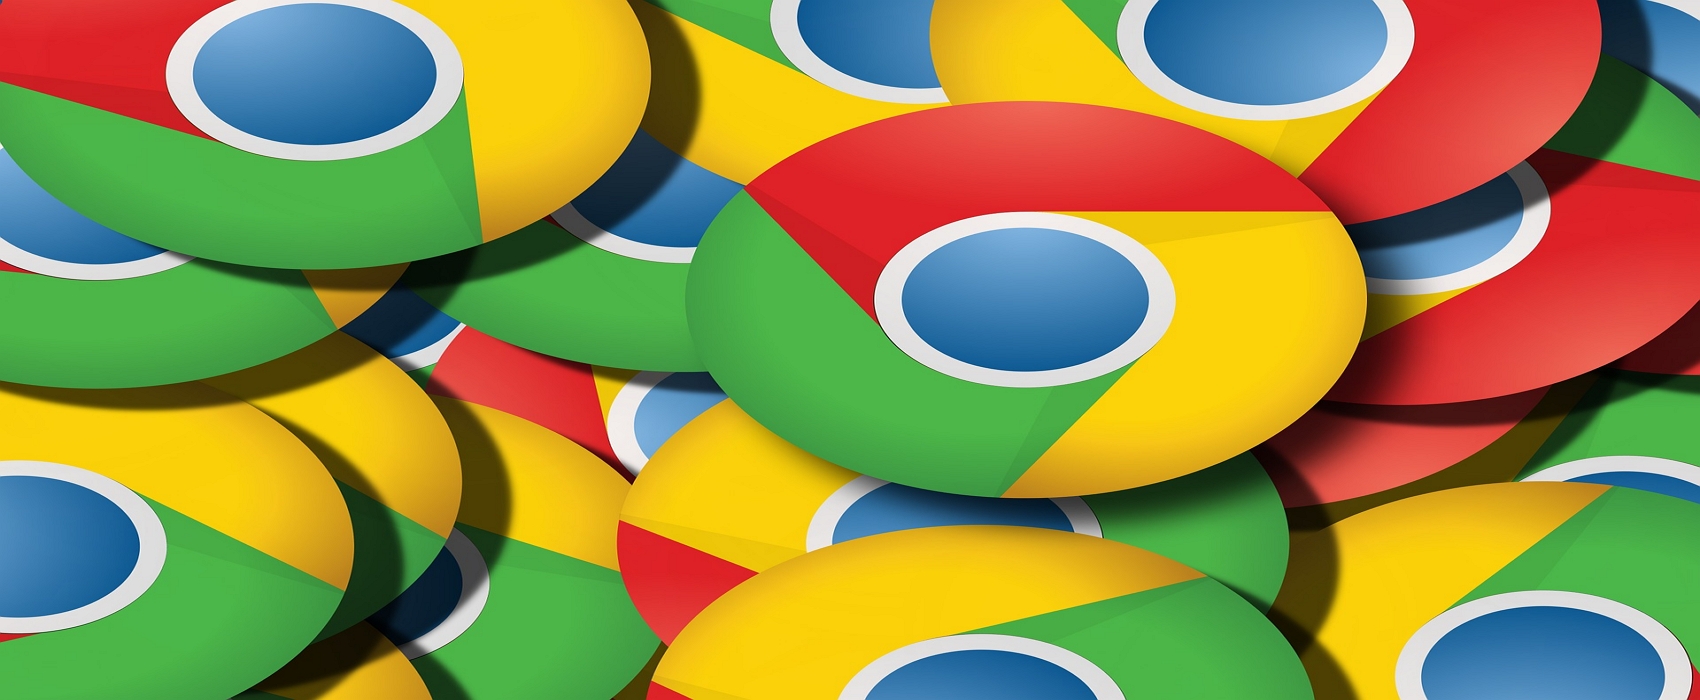 Futura vous explique comment bien gérer les onglets sur Chrome. © Gerd Altmann from Pixabay